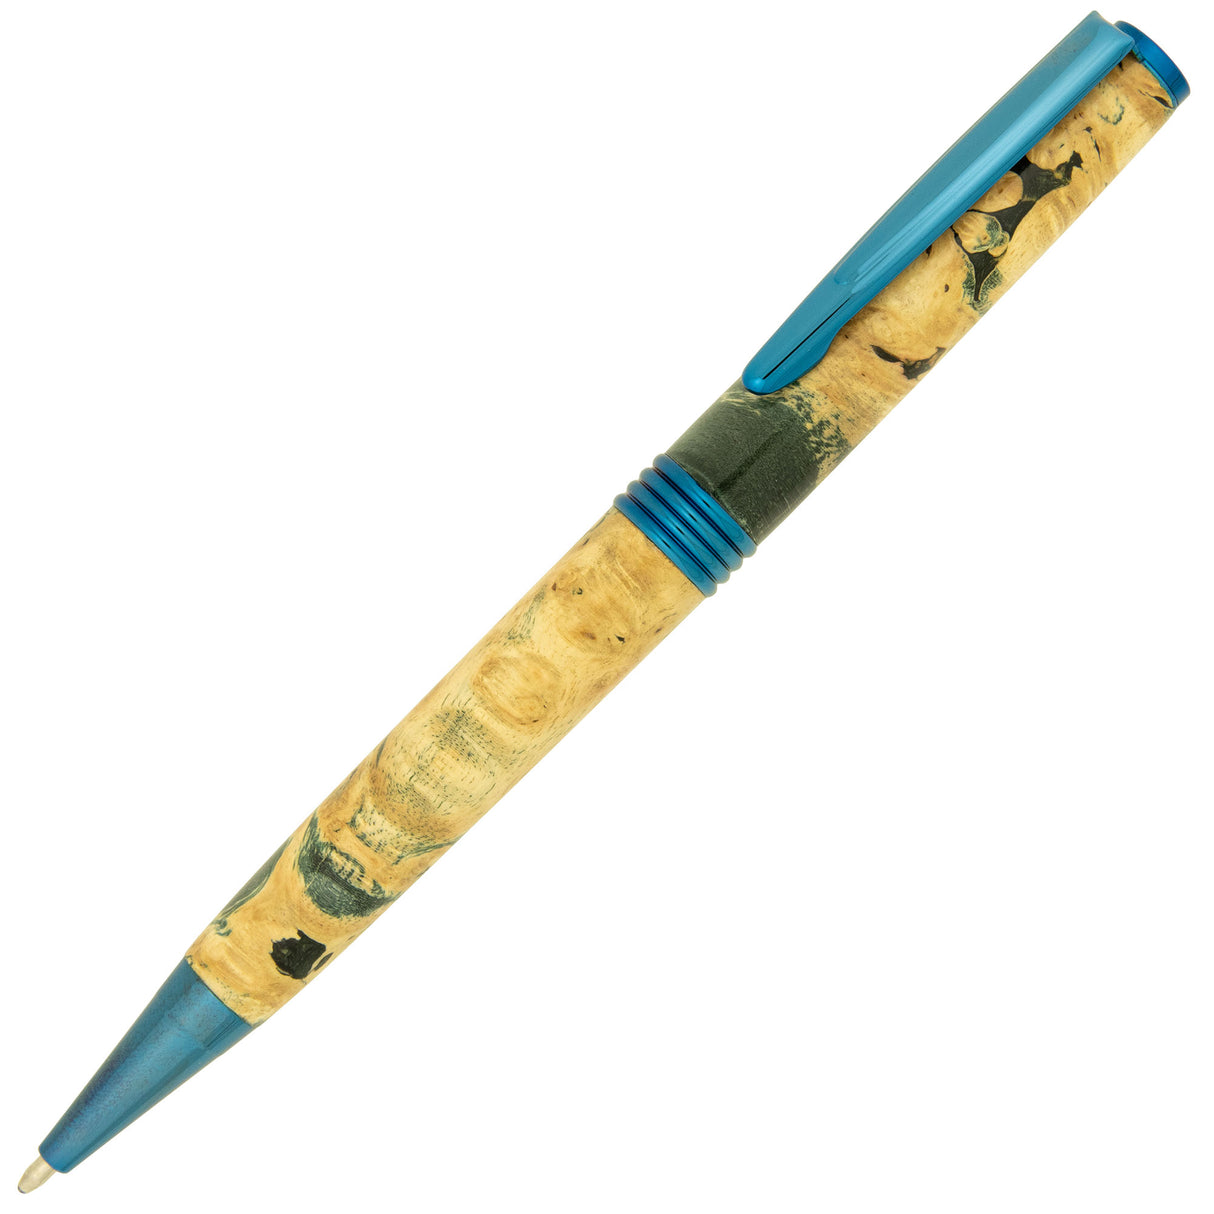 Streamline Ballpoint Pen kit